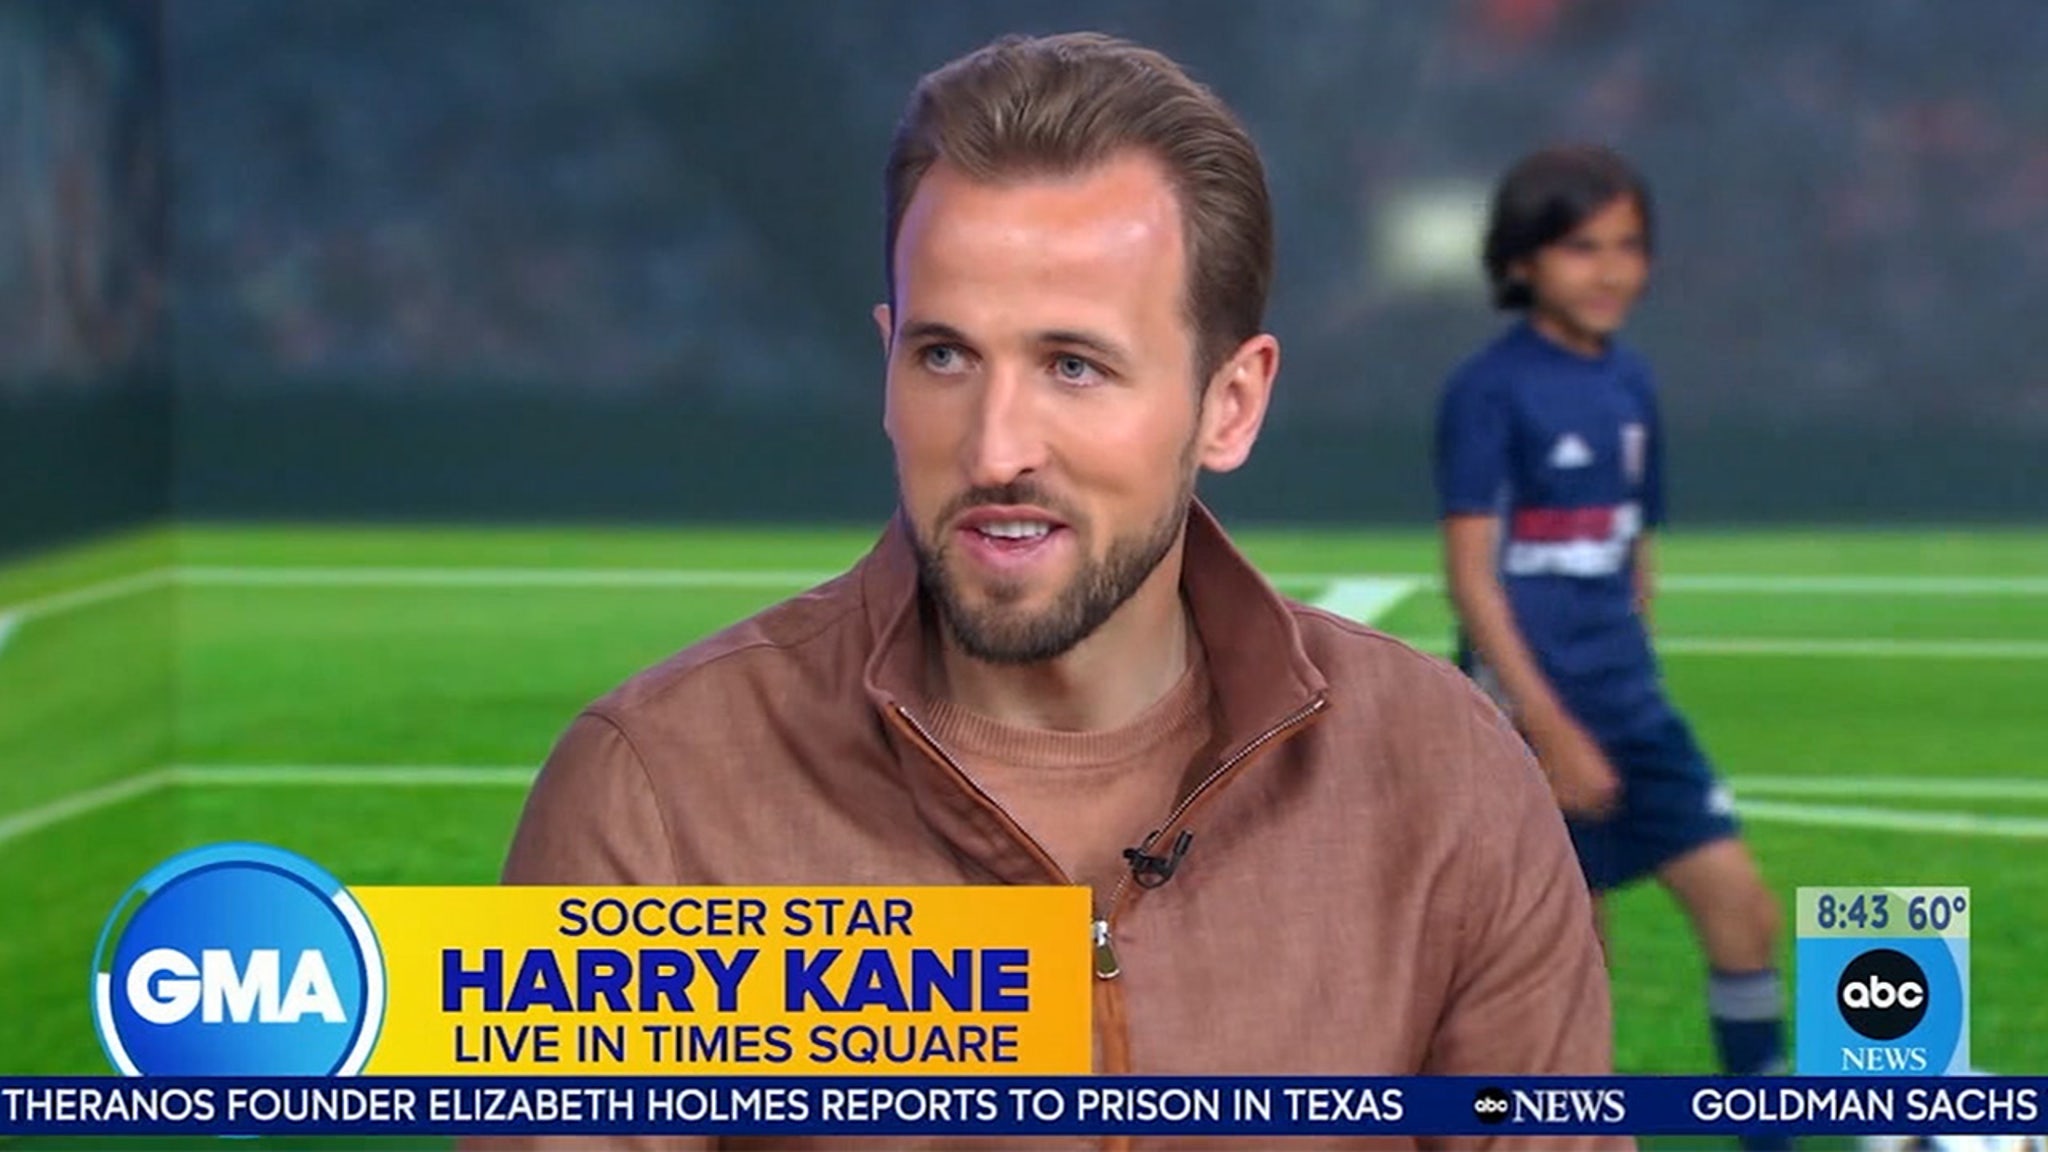 Soccer Star Harry Kane Still Interested In NFL Kicking Career